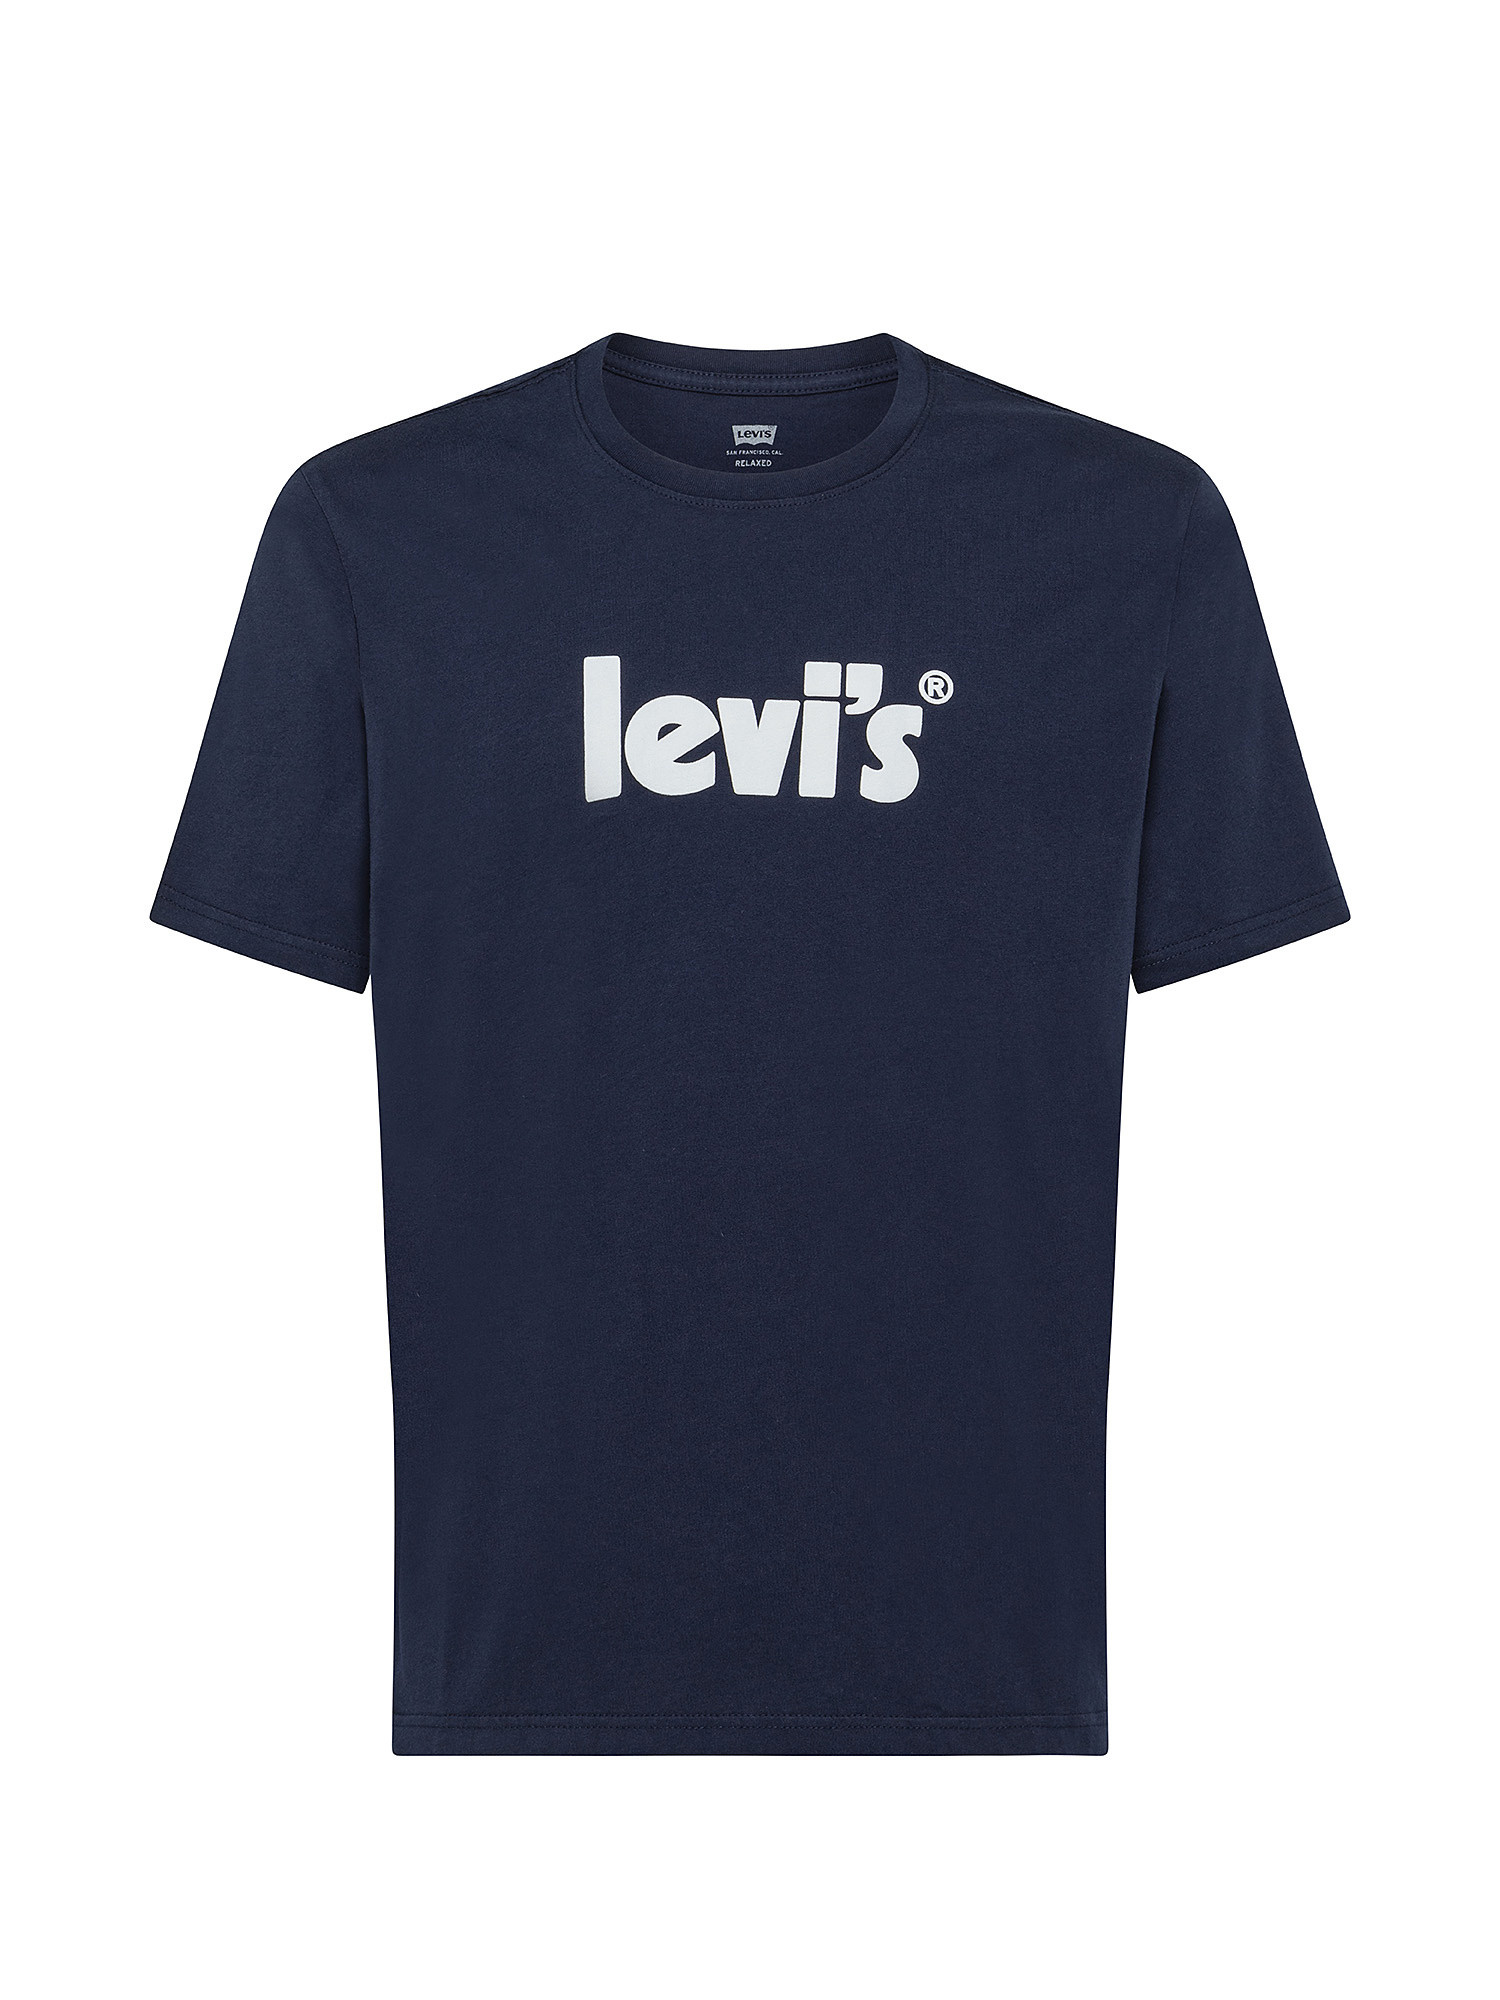 T-shirt con logo, Blu, large image number 0